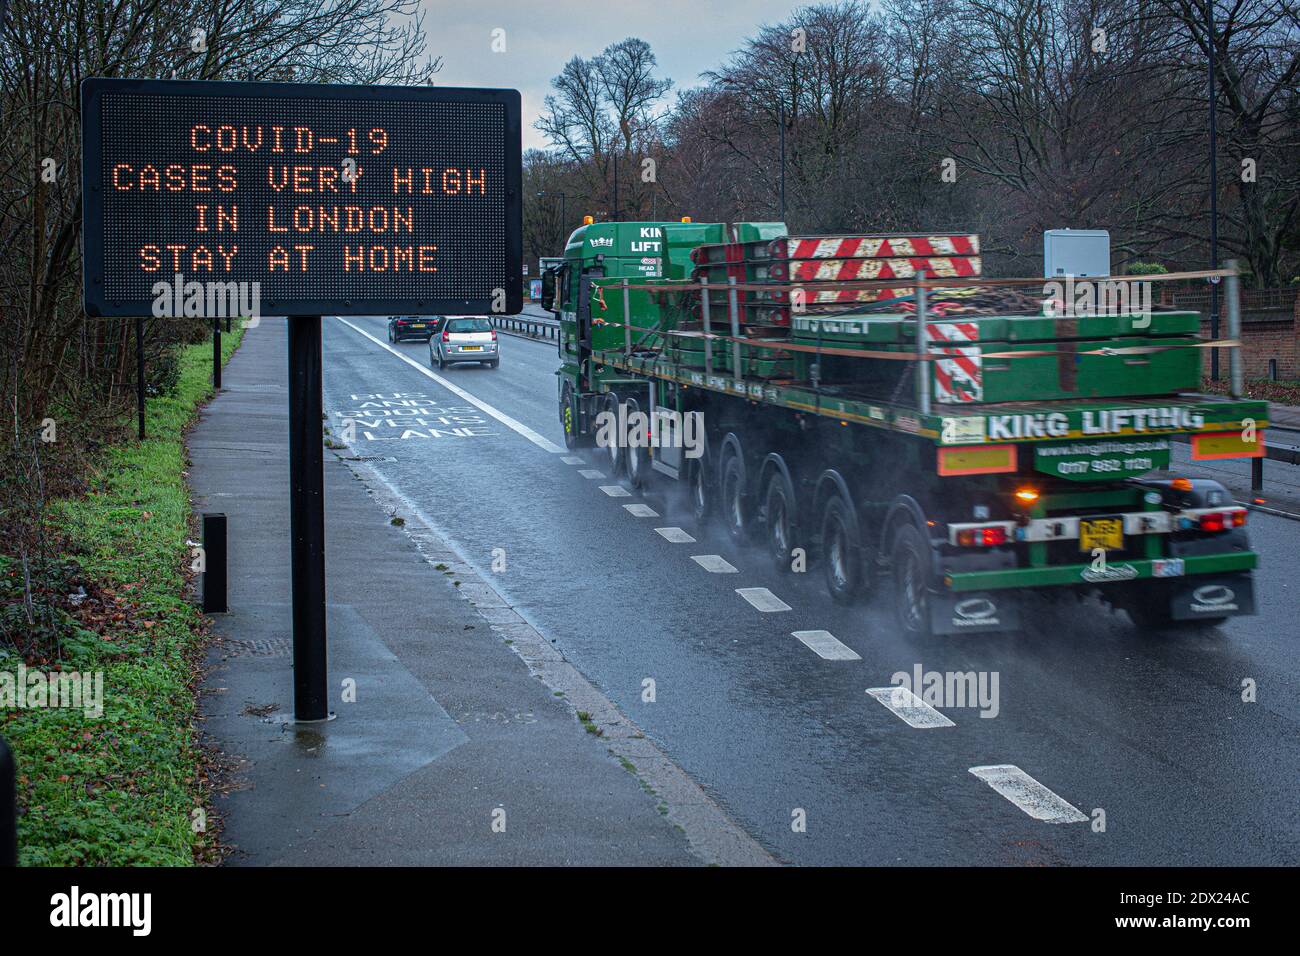 Gran Bretaña / UN cartel, en la carretera A3 una carretera principal que conecta Londres en el sur de Inglaterra, instruye a permanecer en casa durante el brote de coronavirus Covid-19. Foto de stock